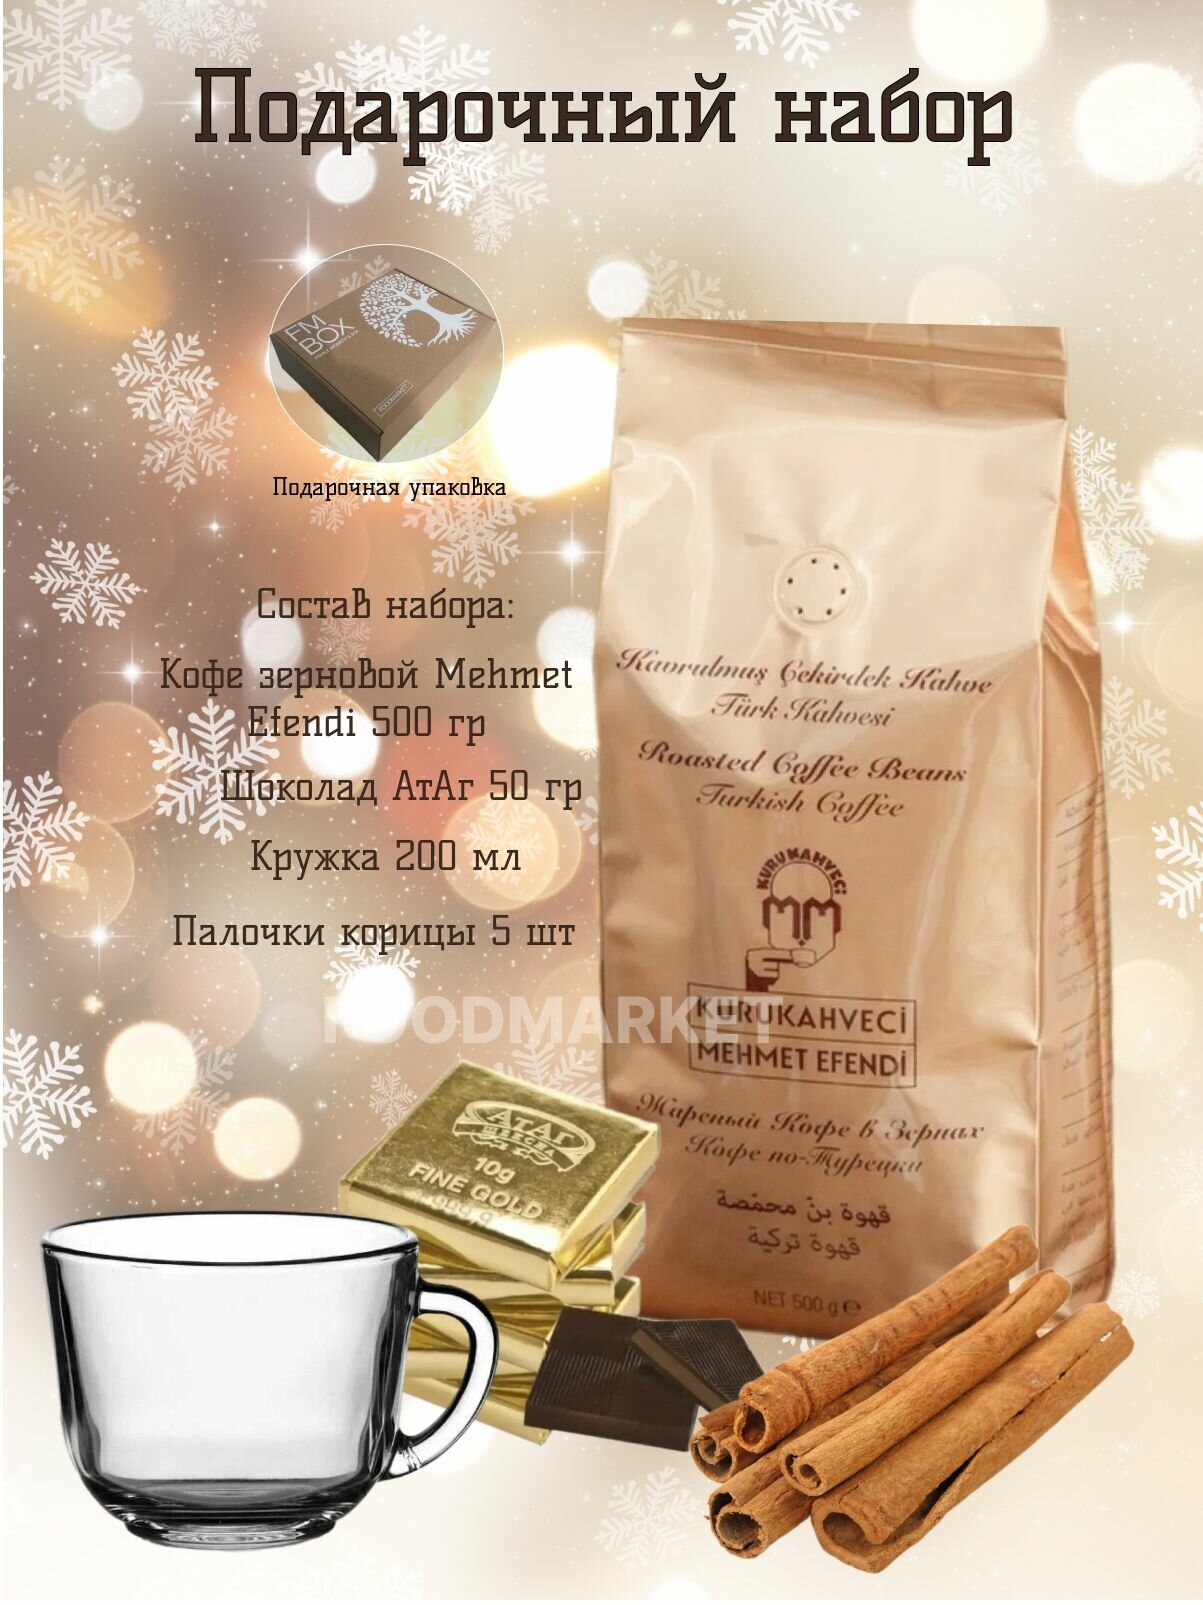 Кофе зерновой MEHMED EFENDI, подарочный набор кружка, корица